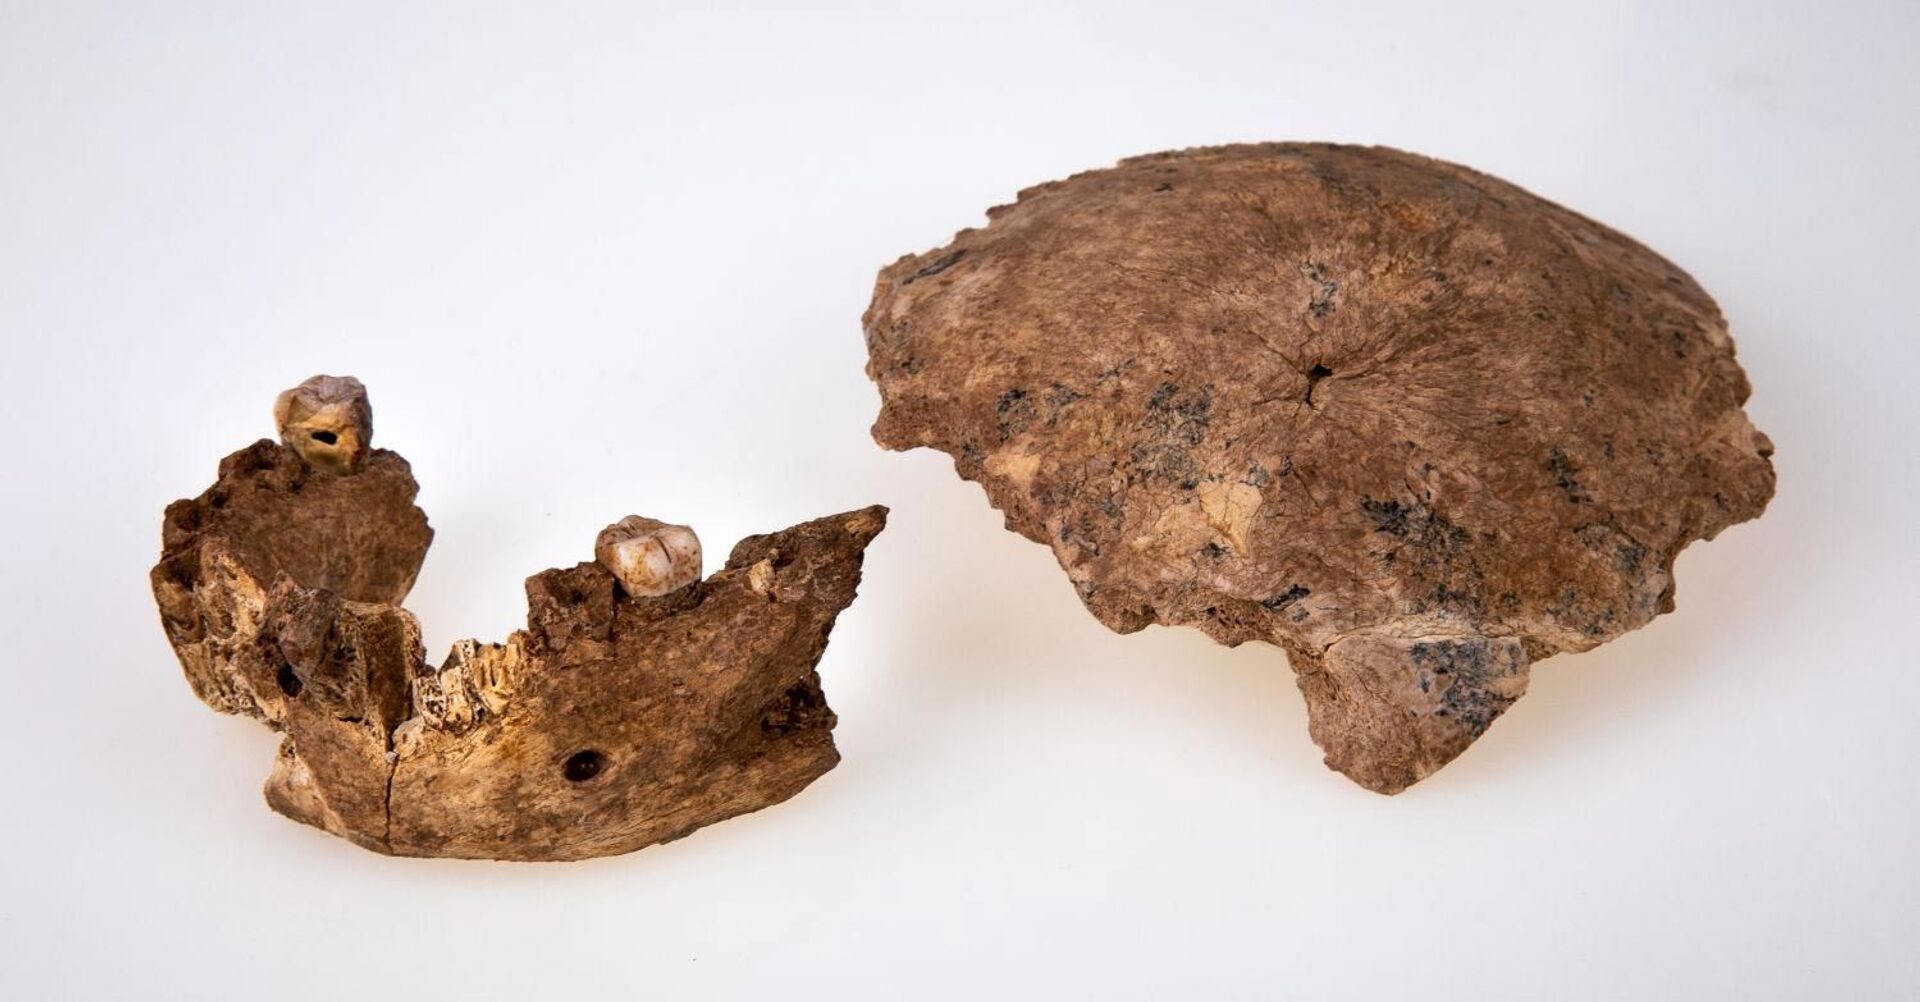 Descoberta de fóssil de espécie humana antiga aponta para peculiar processo evolutivo (FOTOS) - Sputnik Brasil, 1920, 01.07.2021